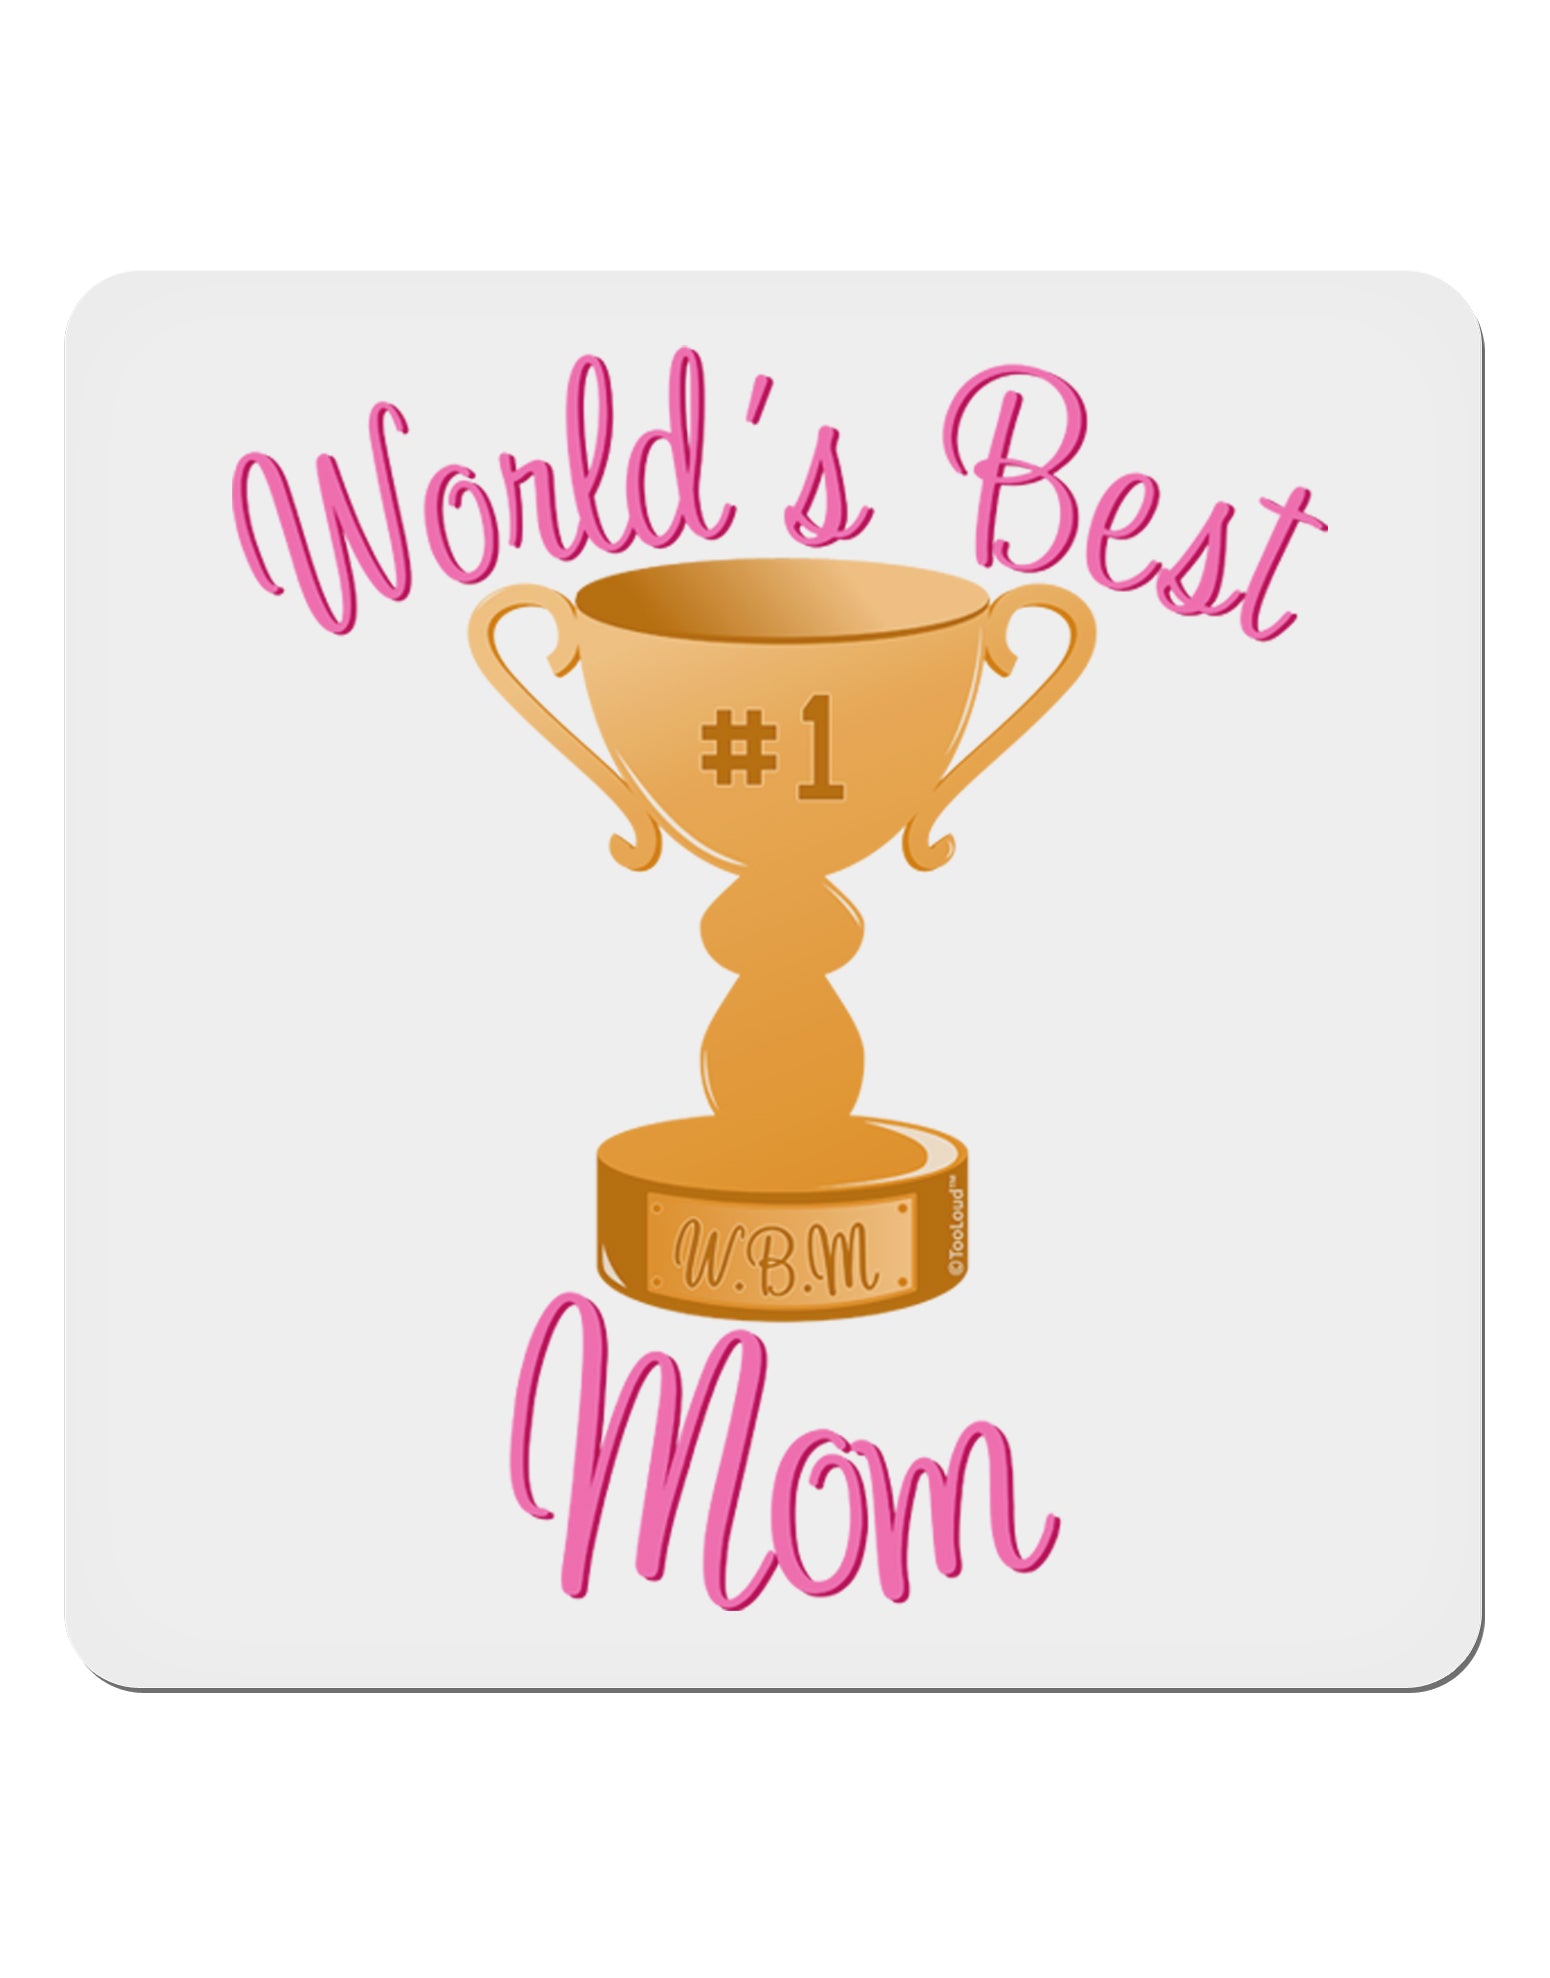 world's best mom Sticker